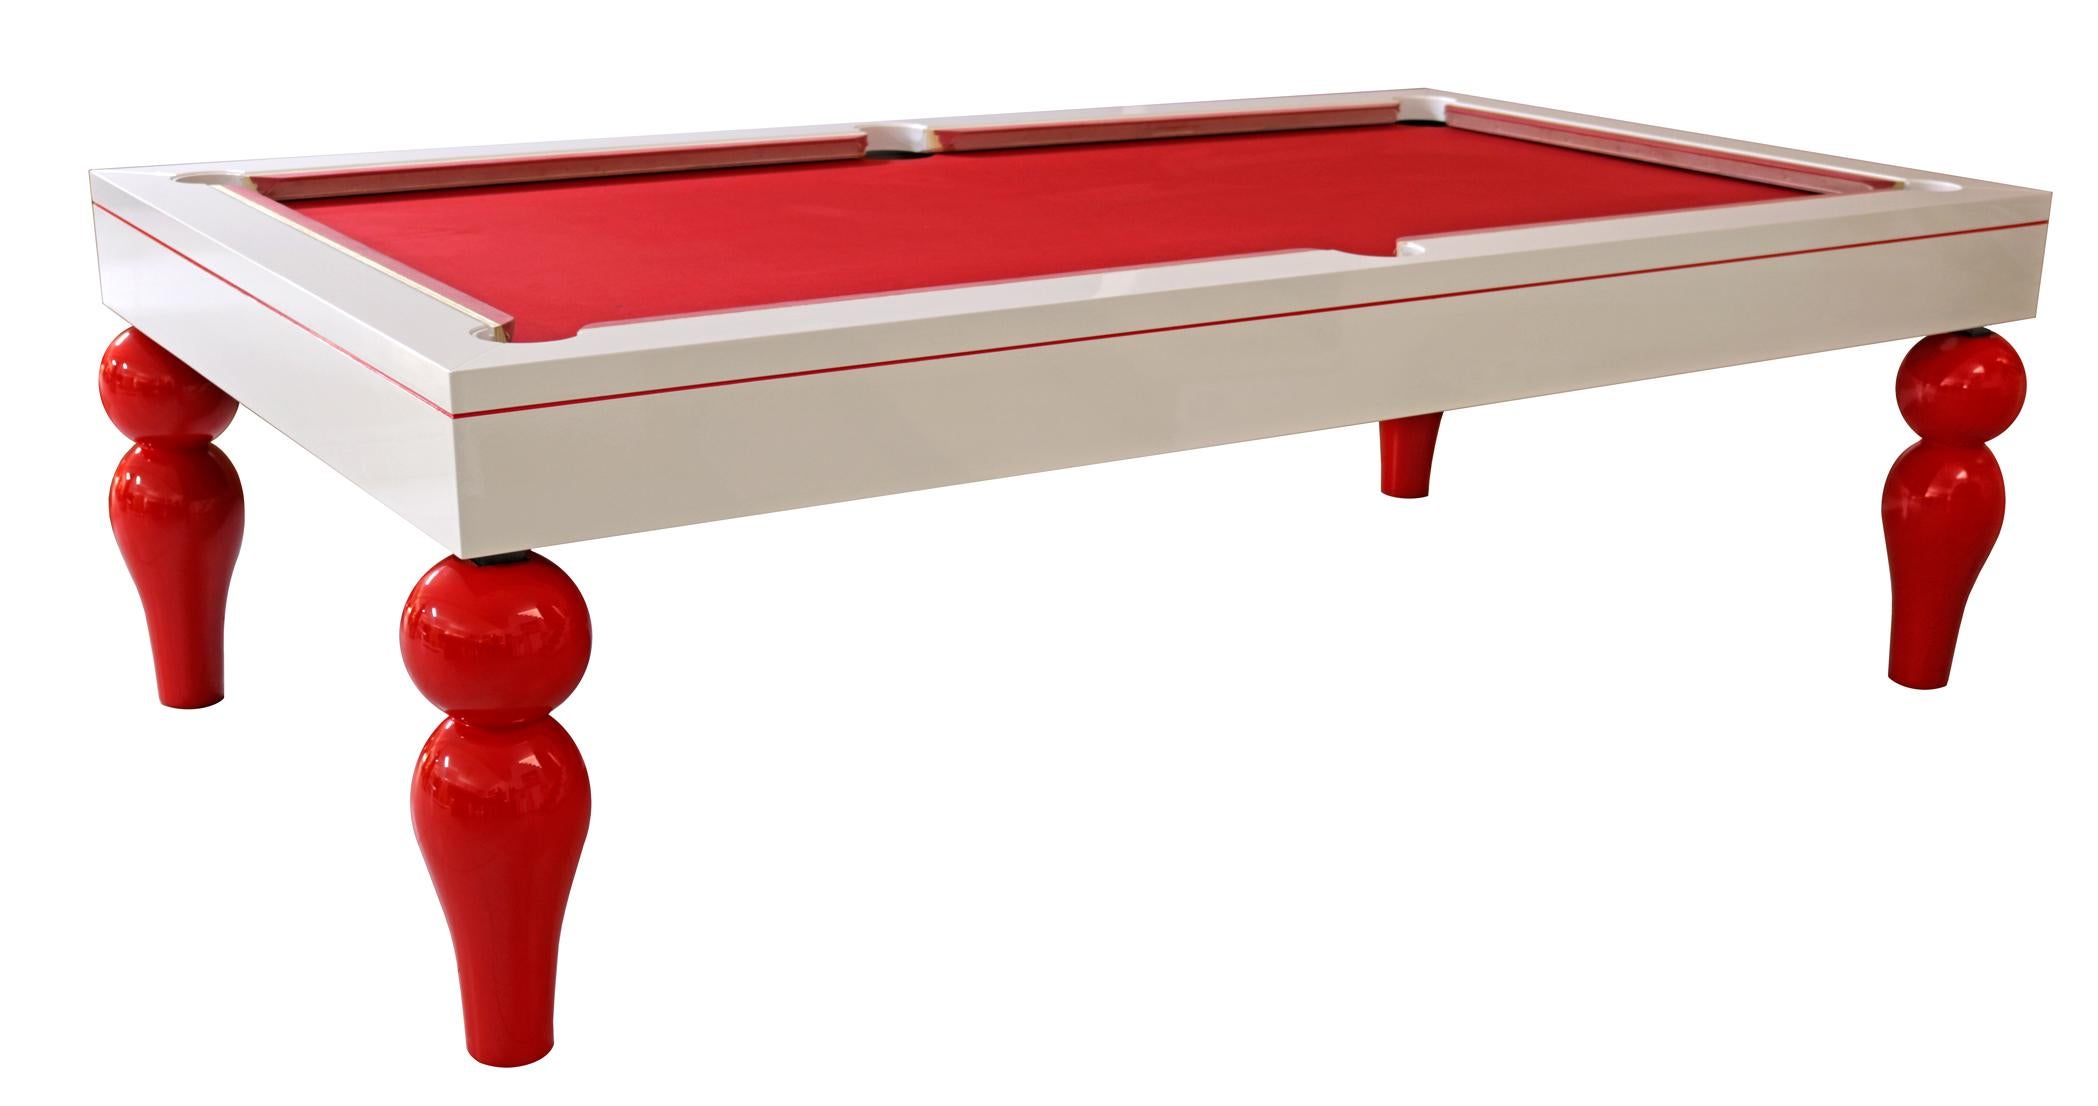 Esstisch, Billardtisch, Snooker und Tischtennisplatte mit modernem Design.

Ein verstellbarer Snooker-, Billard- und Pooltisch von hoher Qualität. Der Billard-Esstisch wird mit drei abnehmbaren Platten geliefert. Die Blätter verwandeln den